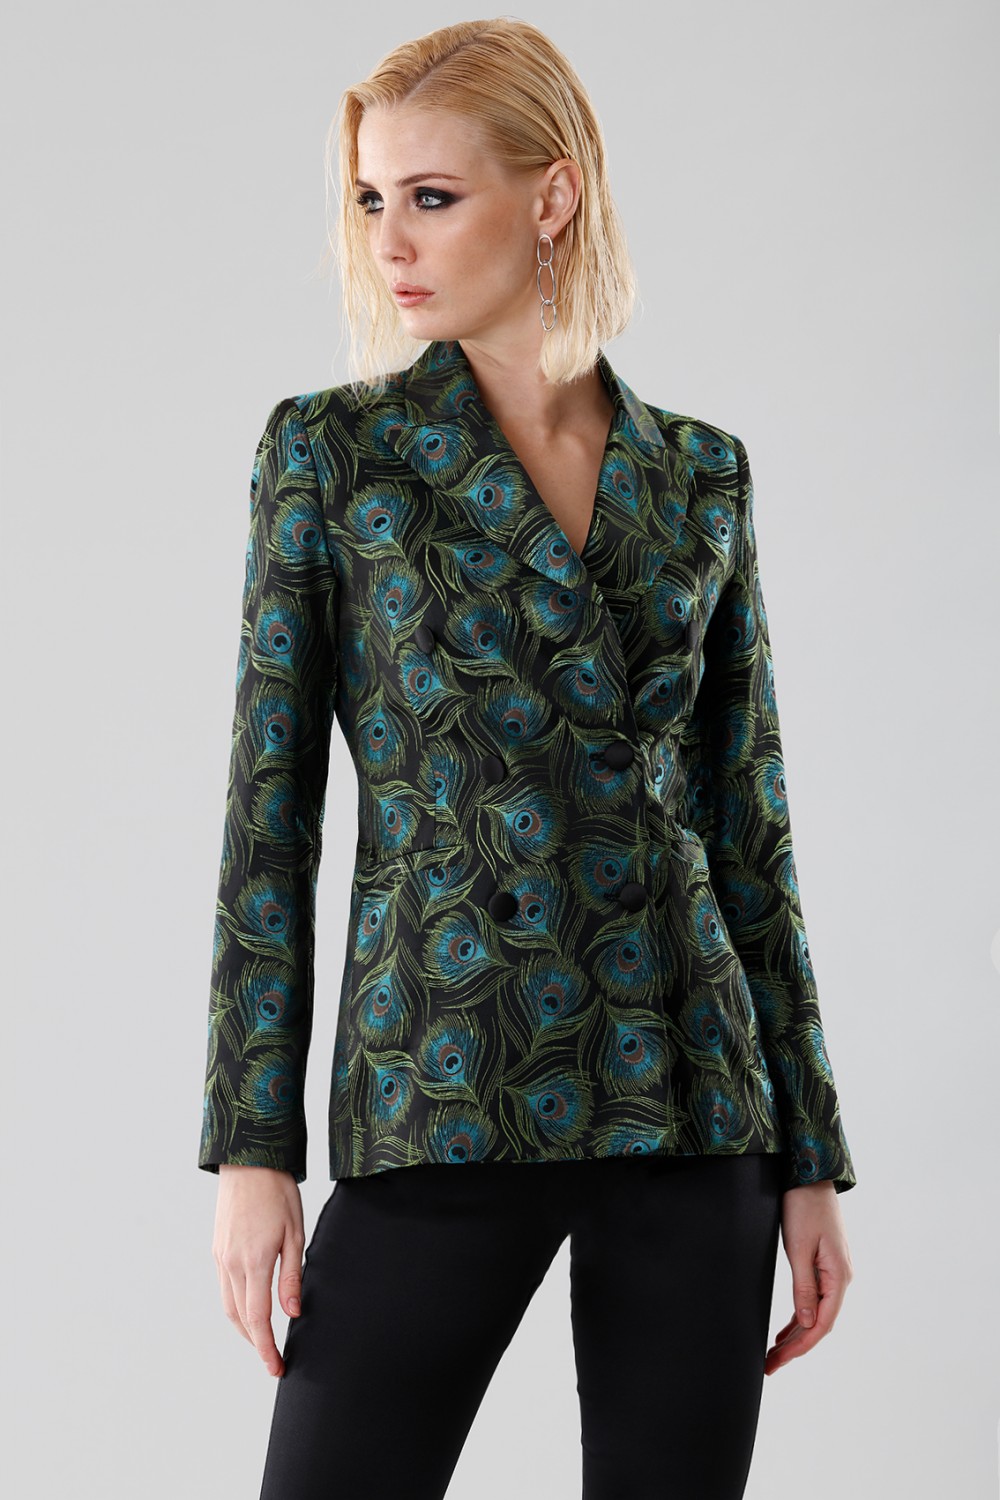 Jacket in peacock print